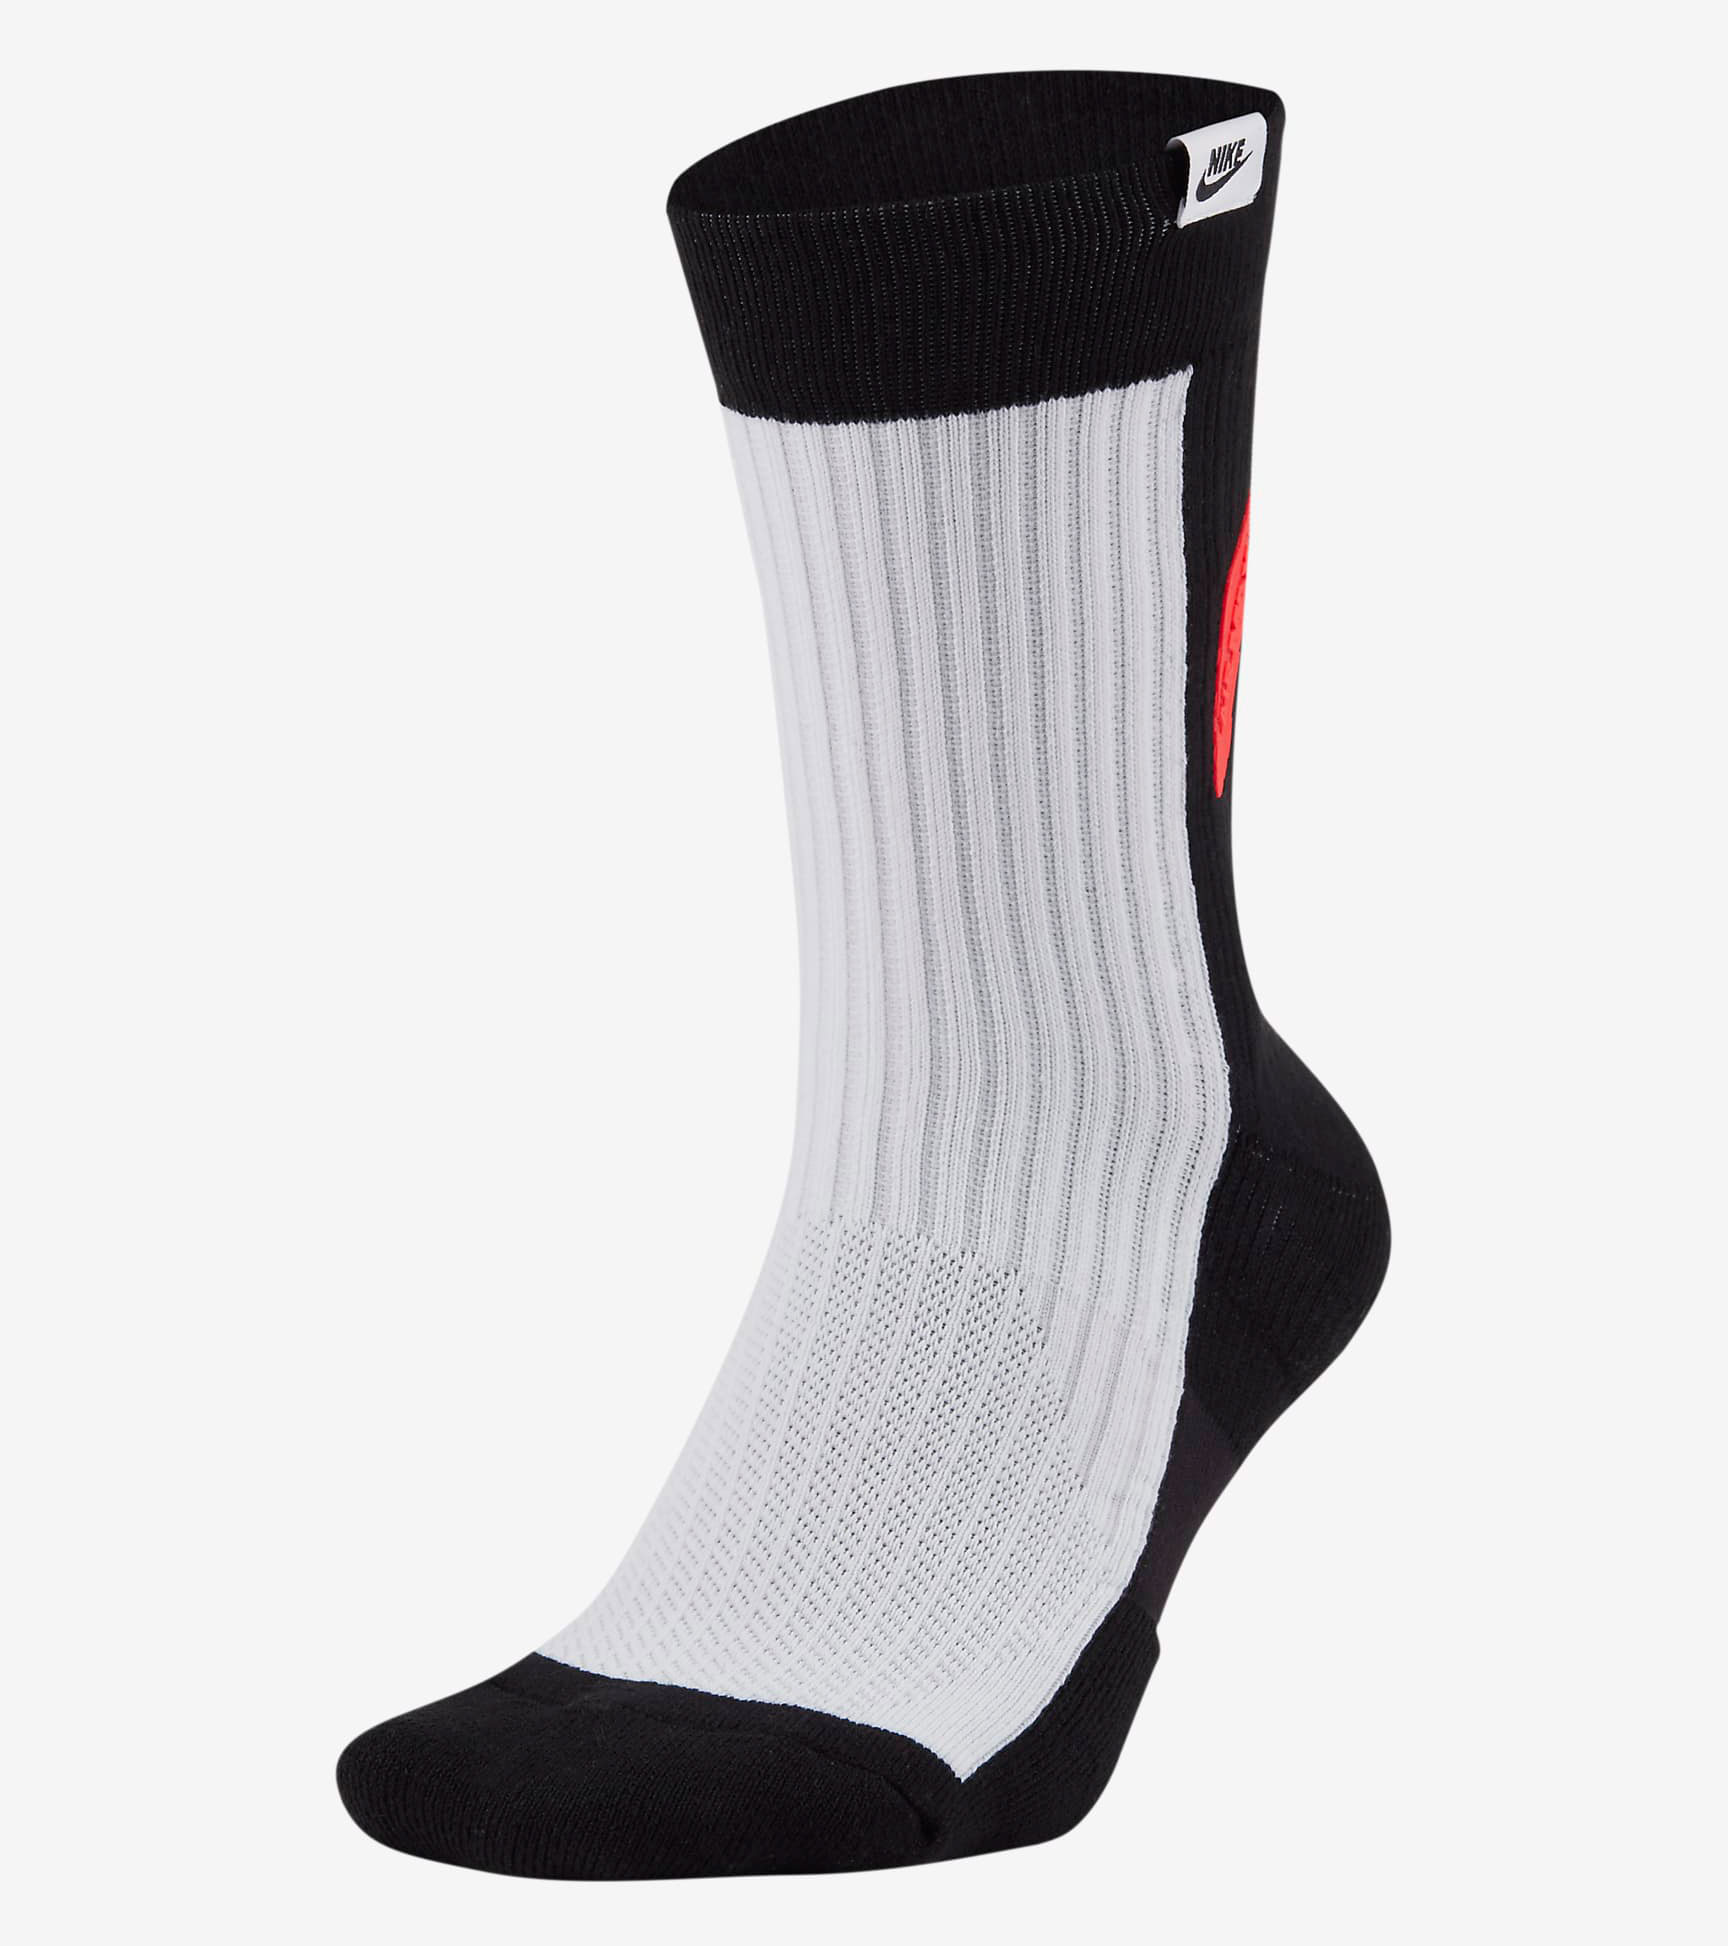 nike-air-max-90-og-infrared-socks-1